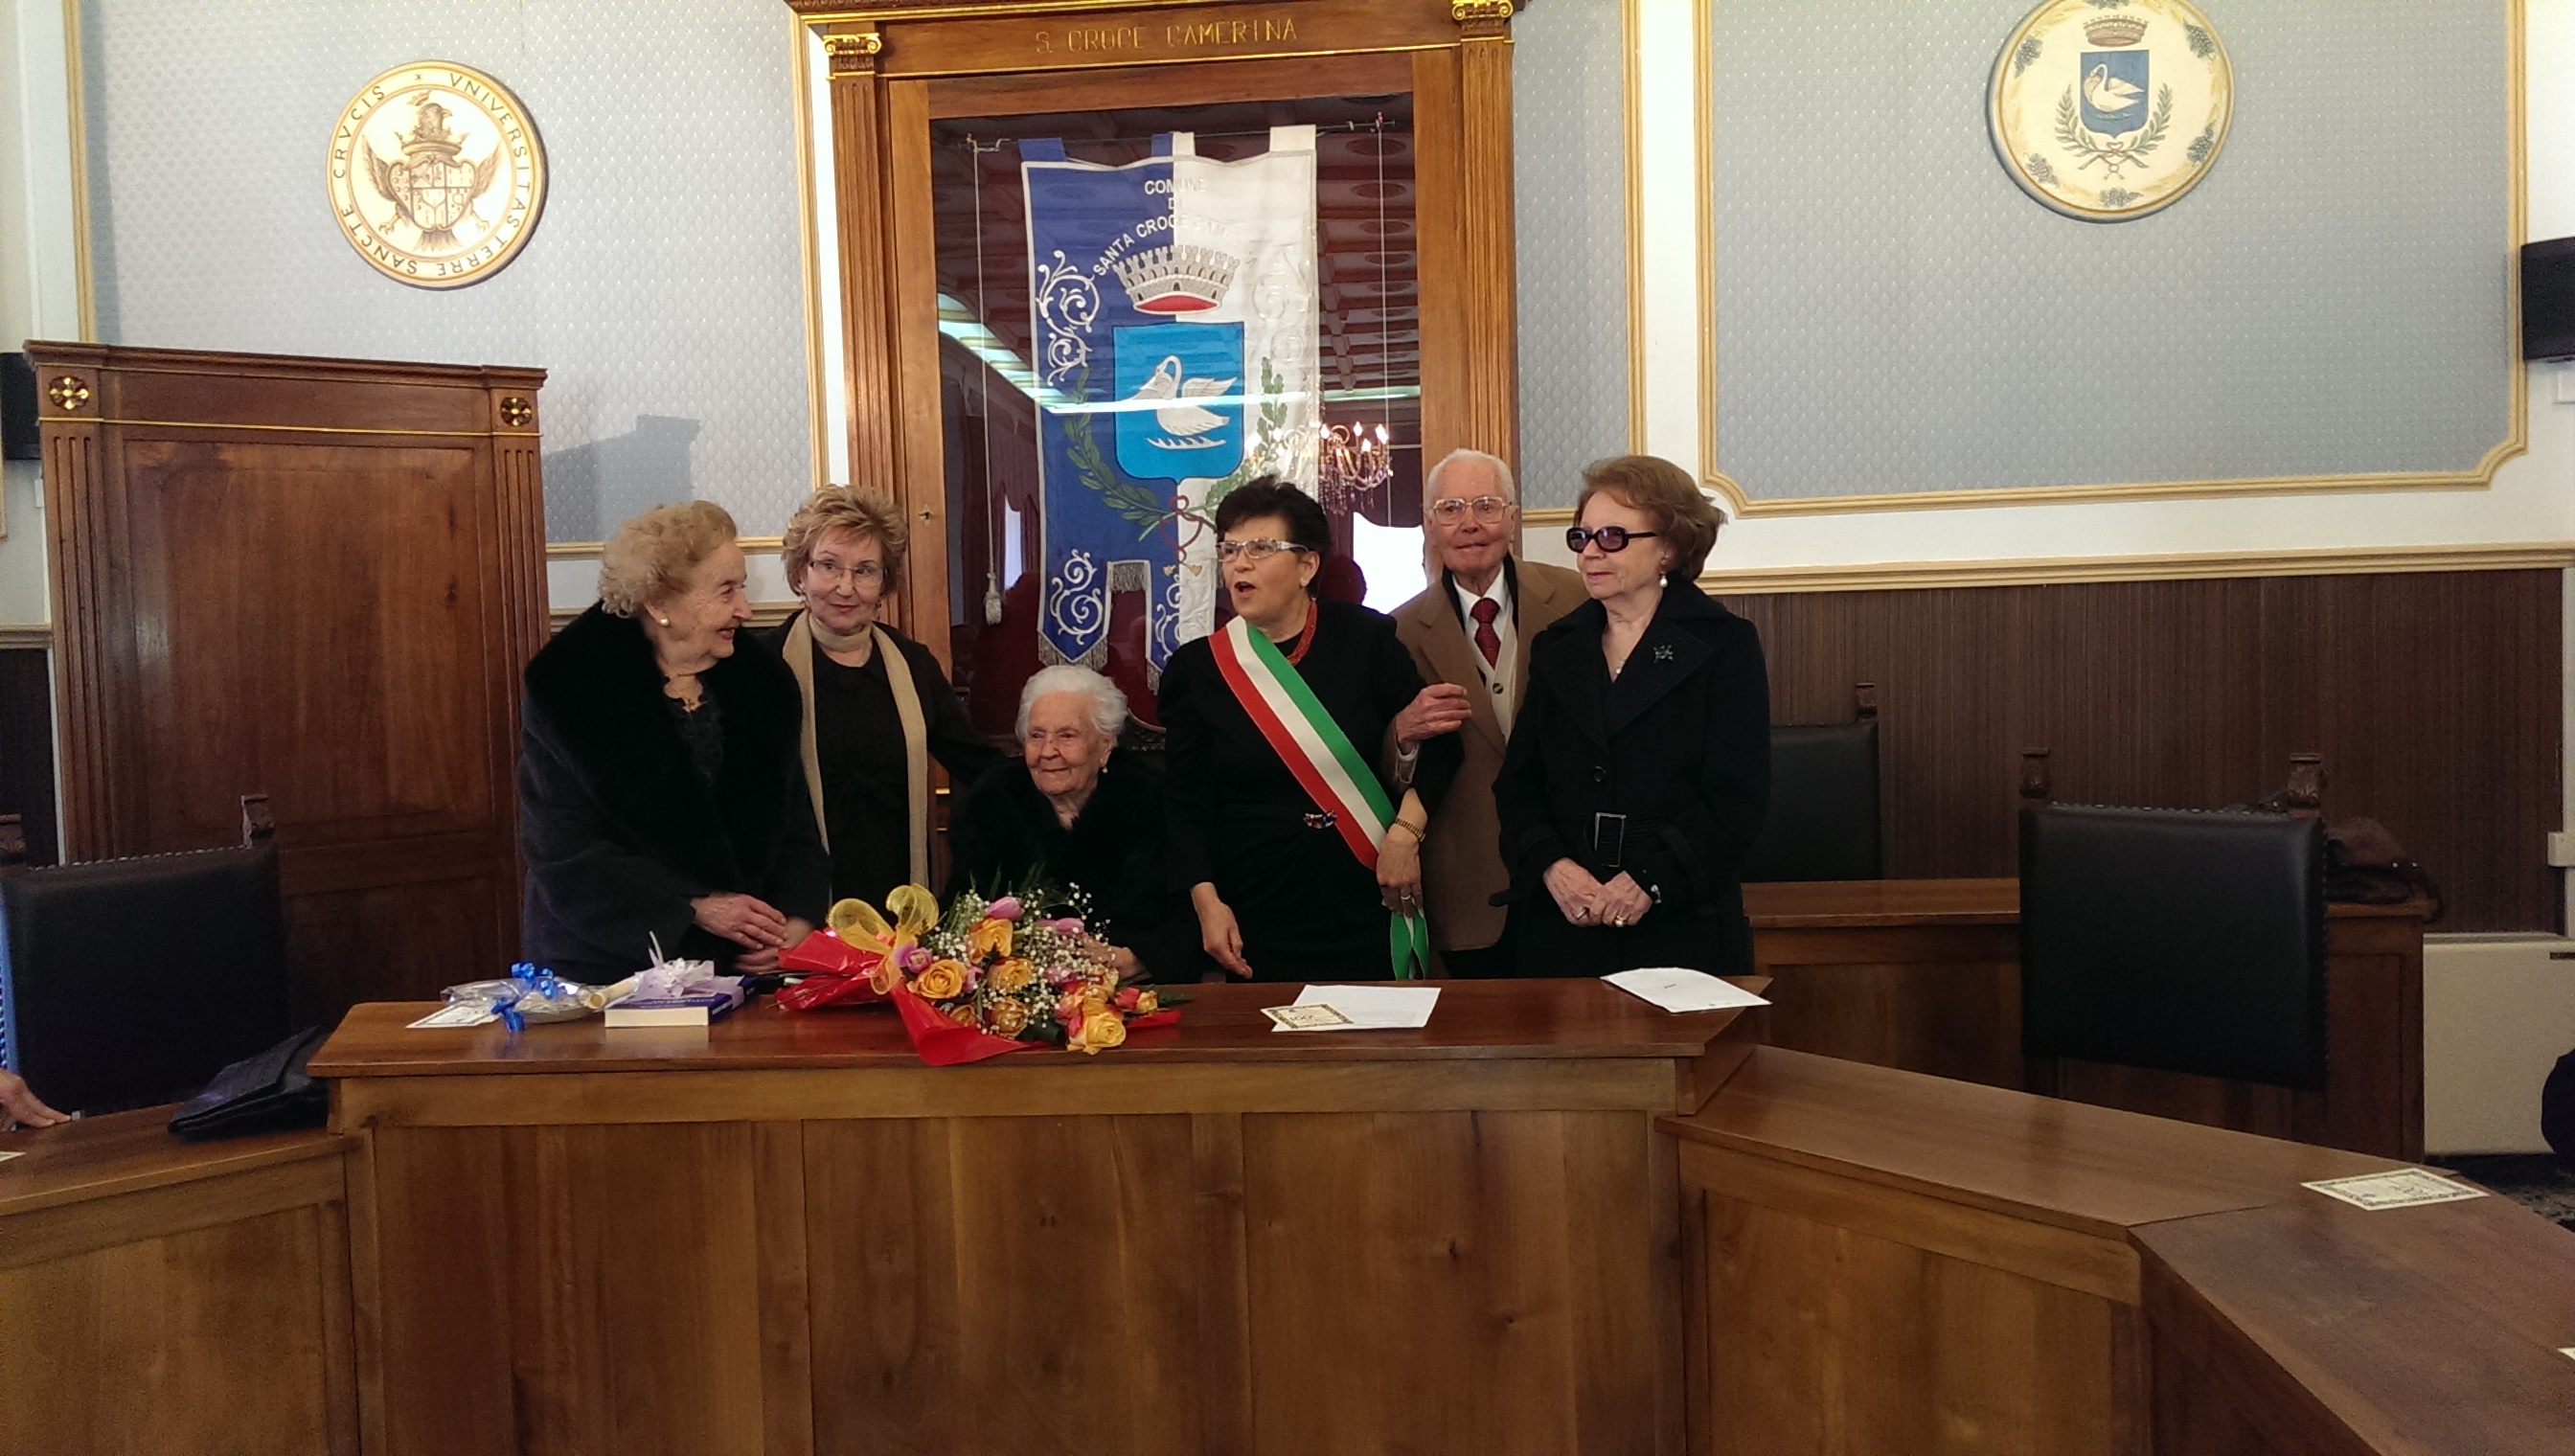  La signora Lucia Barone festeggia 100 anni nell’aula consiliare del Comune: “Il segreto è l’amore”